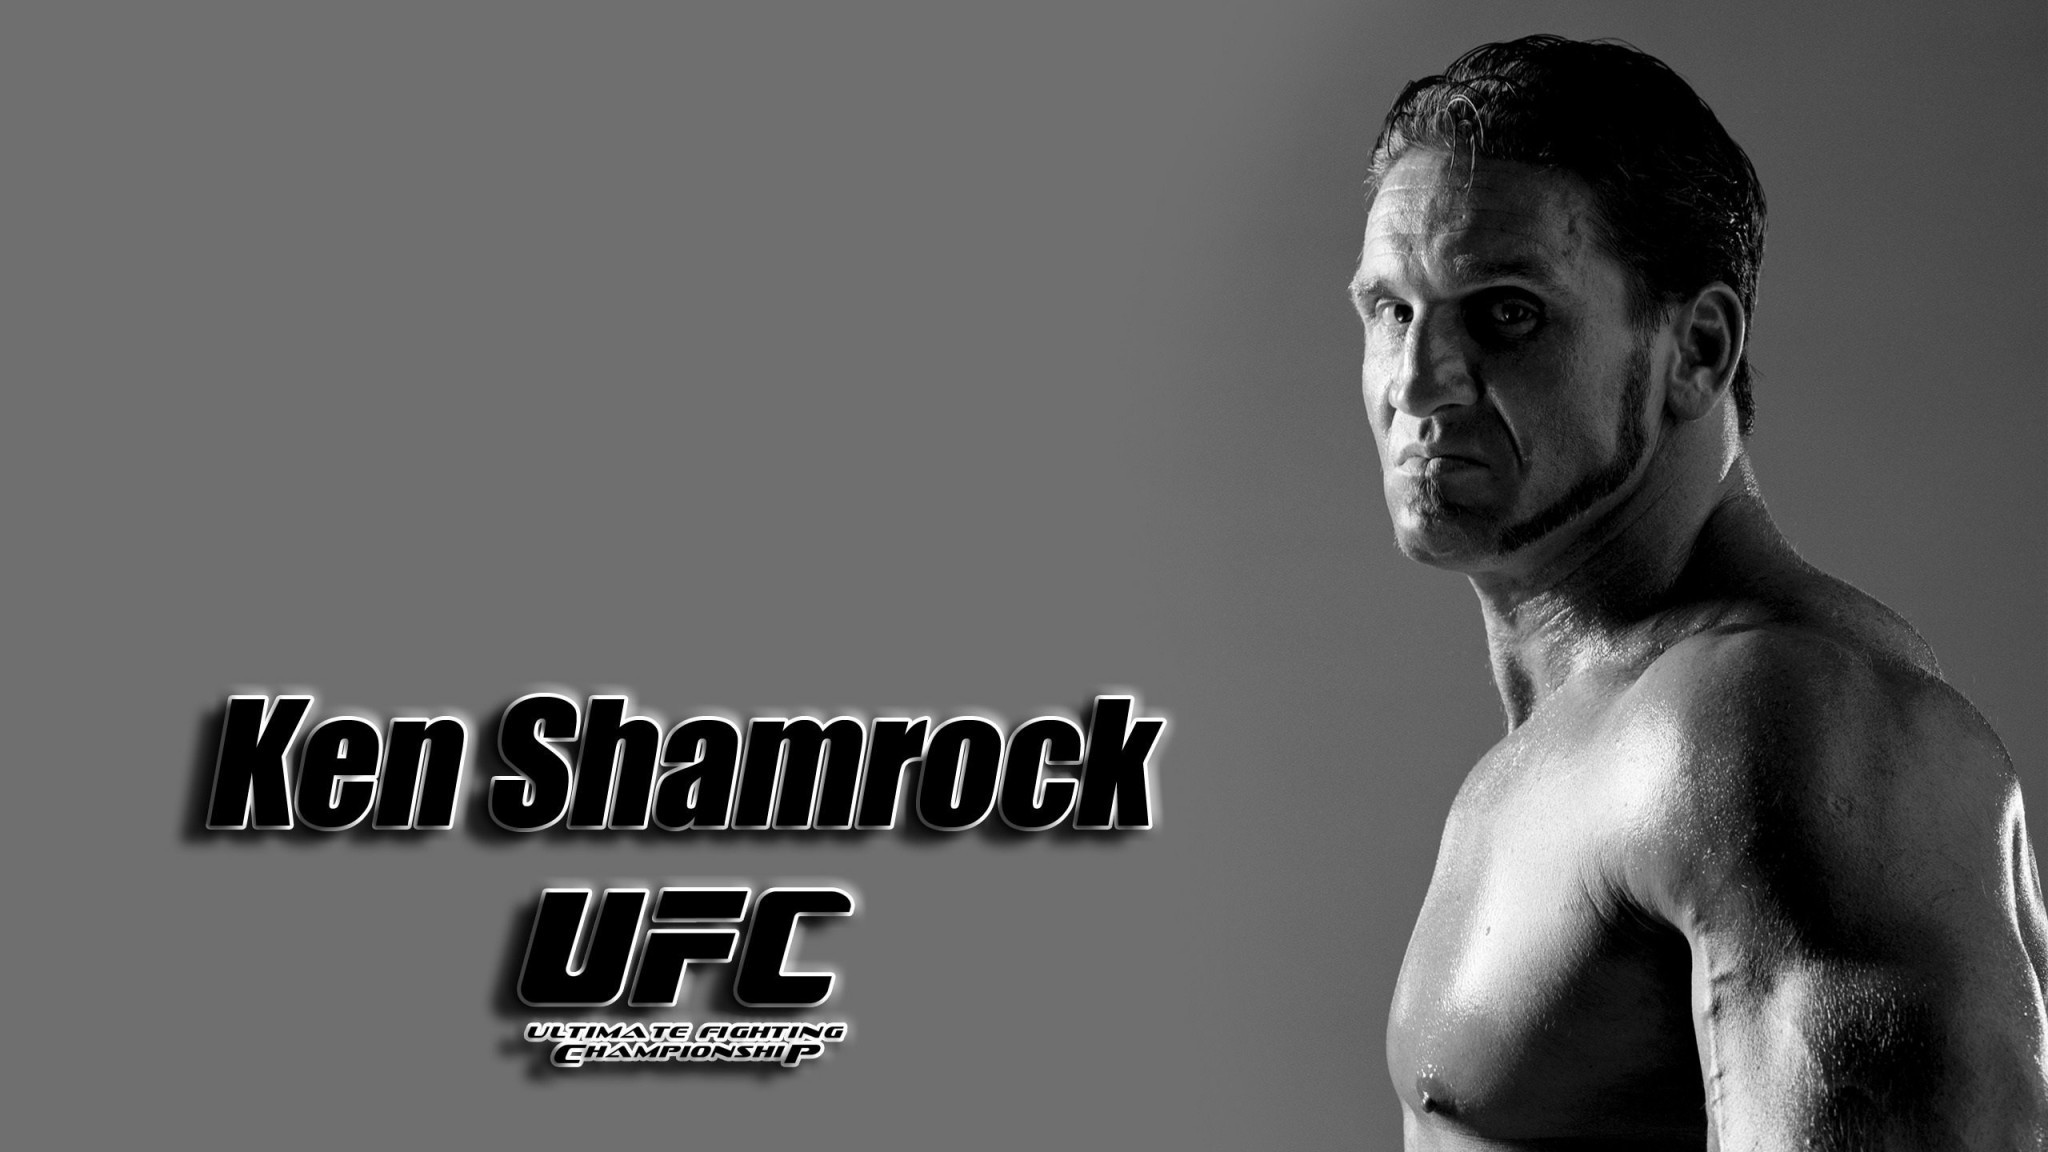 Ken Shamrock Ufc Mixed Martial Arts Fighter Mma Poster - Ken Shamrock Ufc Poster - HD Wallpaper 